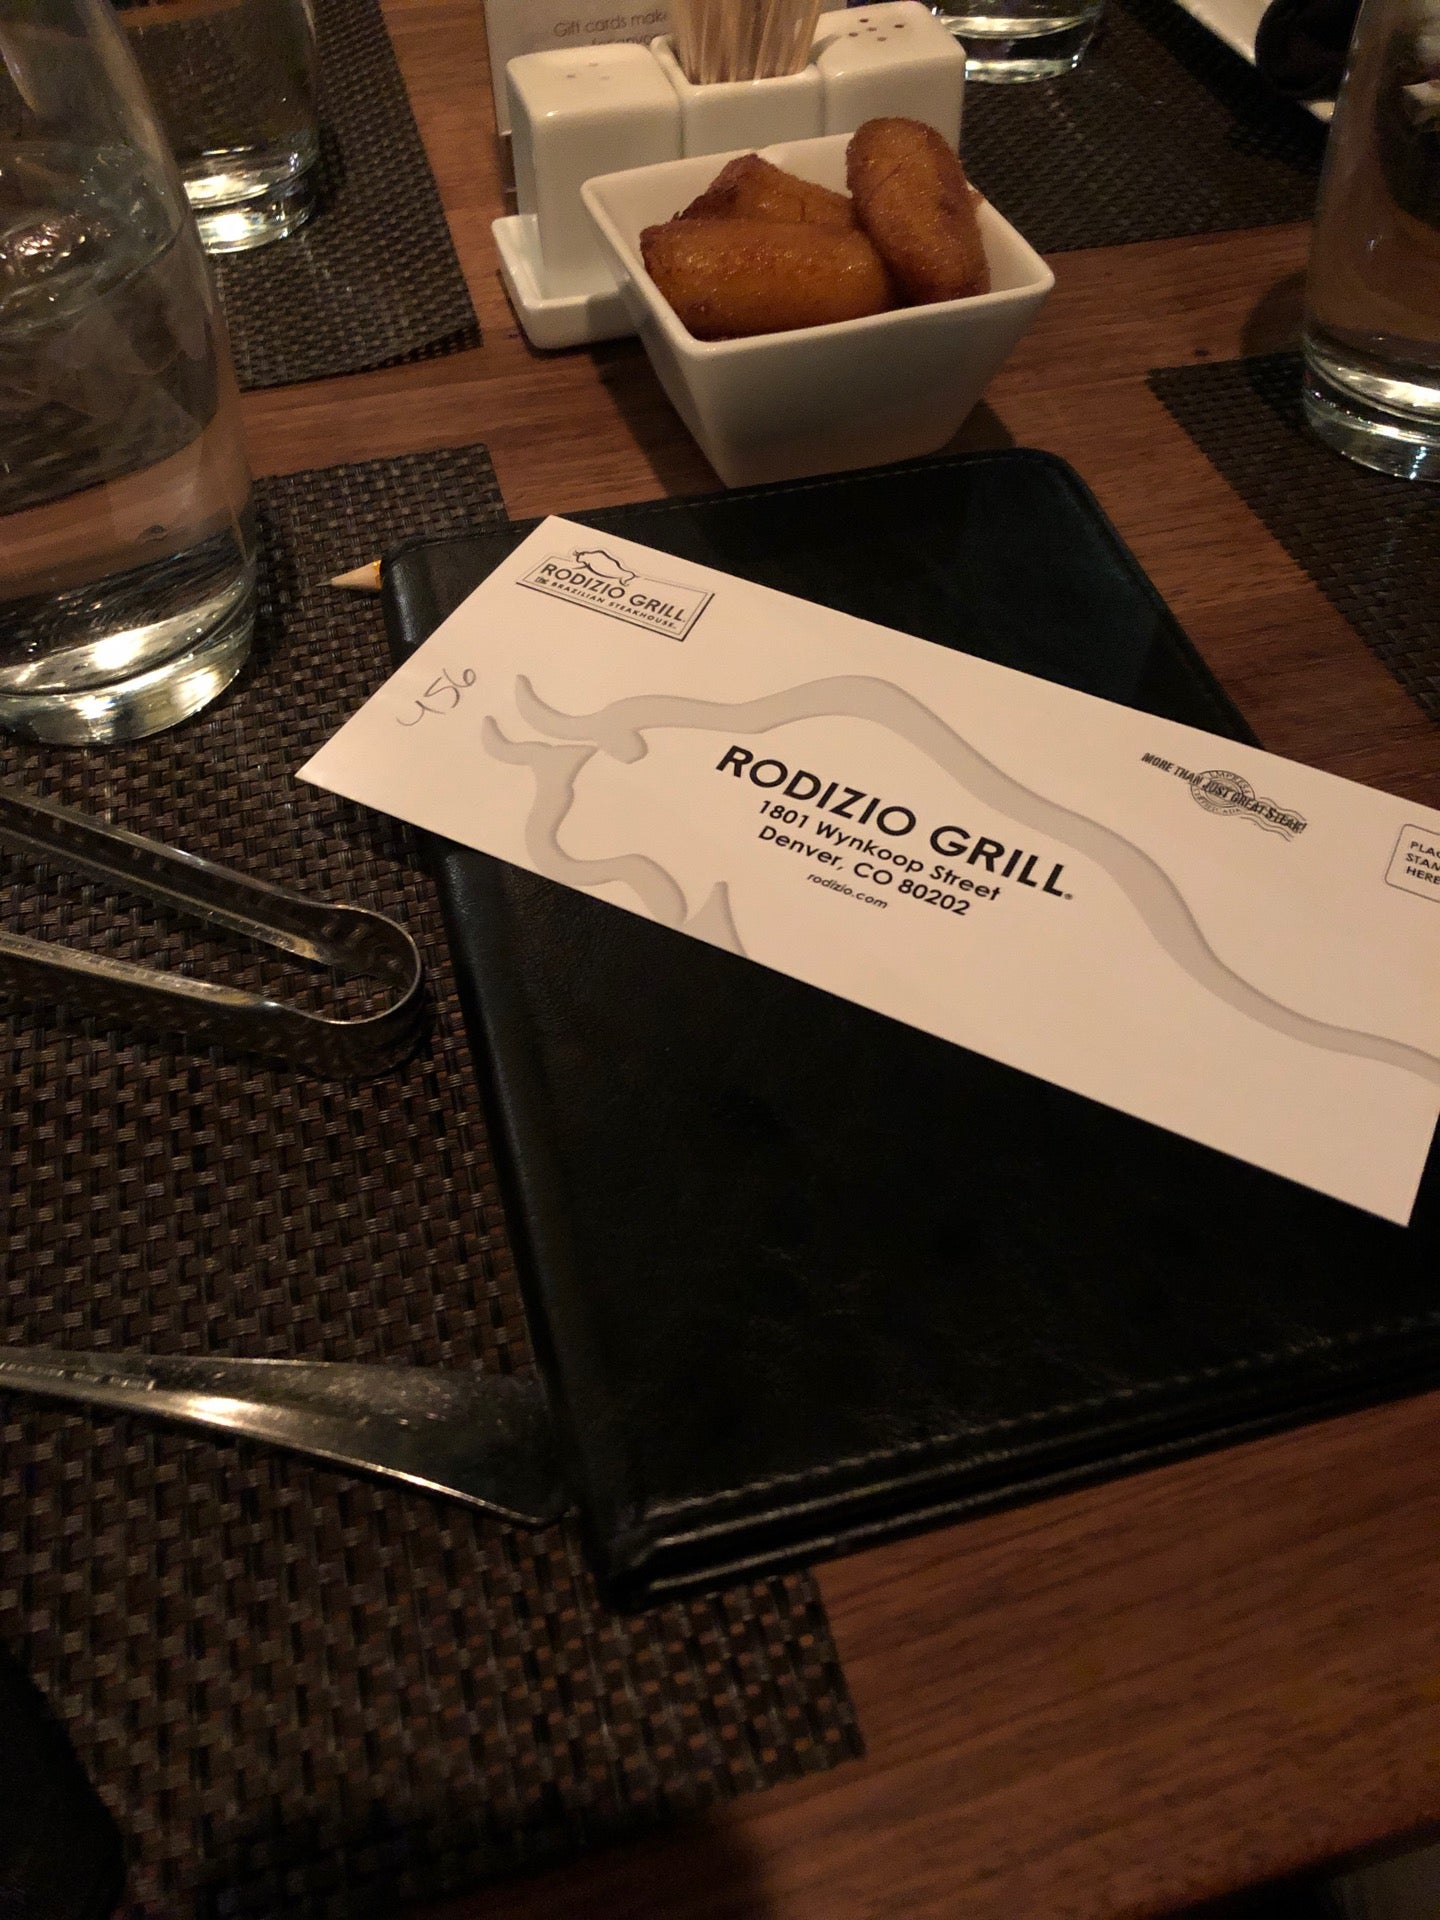 Rodizio Grill Brazilian Steakhouse Denver